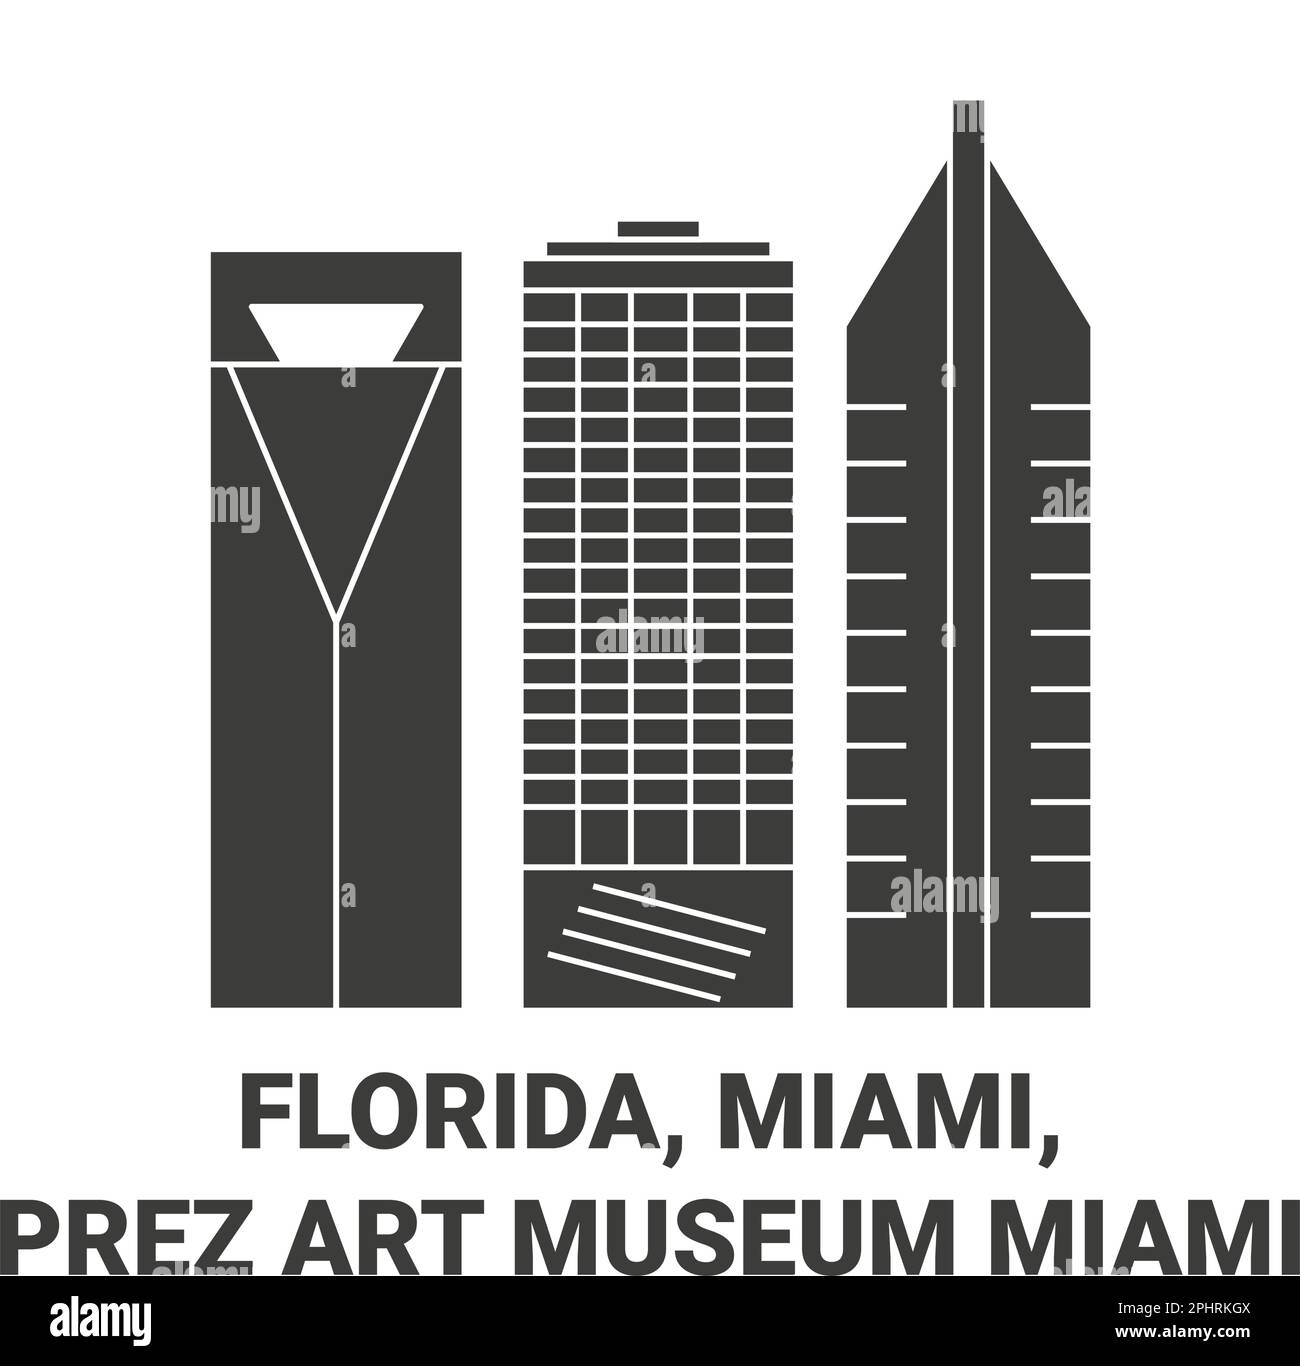 USA, Florida, Miami, Prez Art Museum, Miami, Reiseziel-Vektordarstellung Stock Vektor